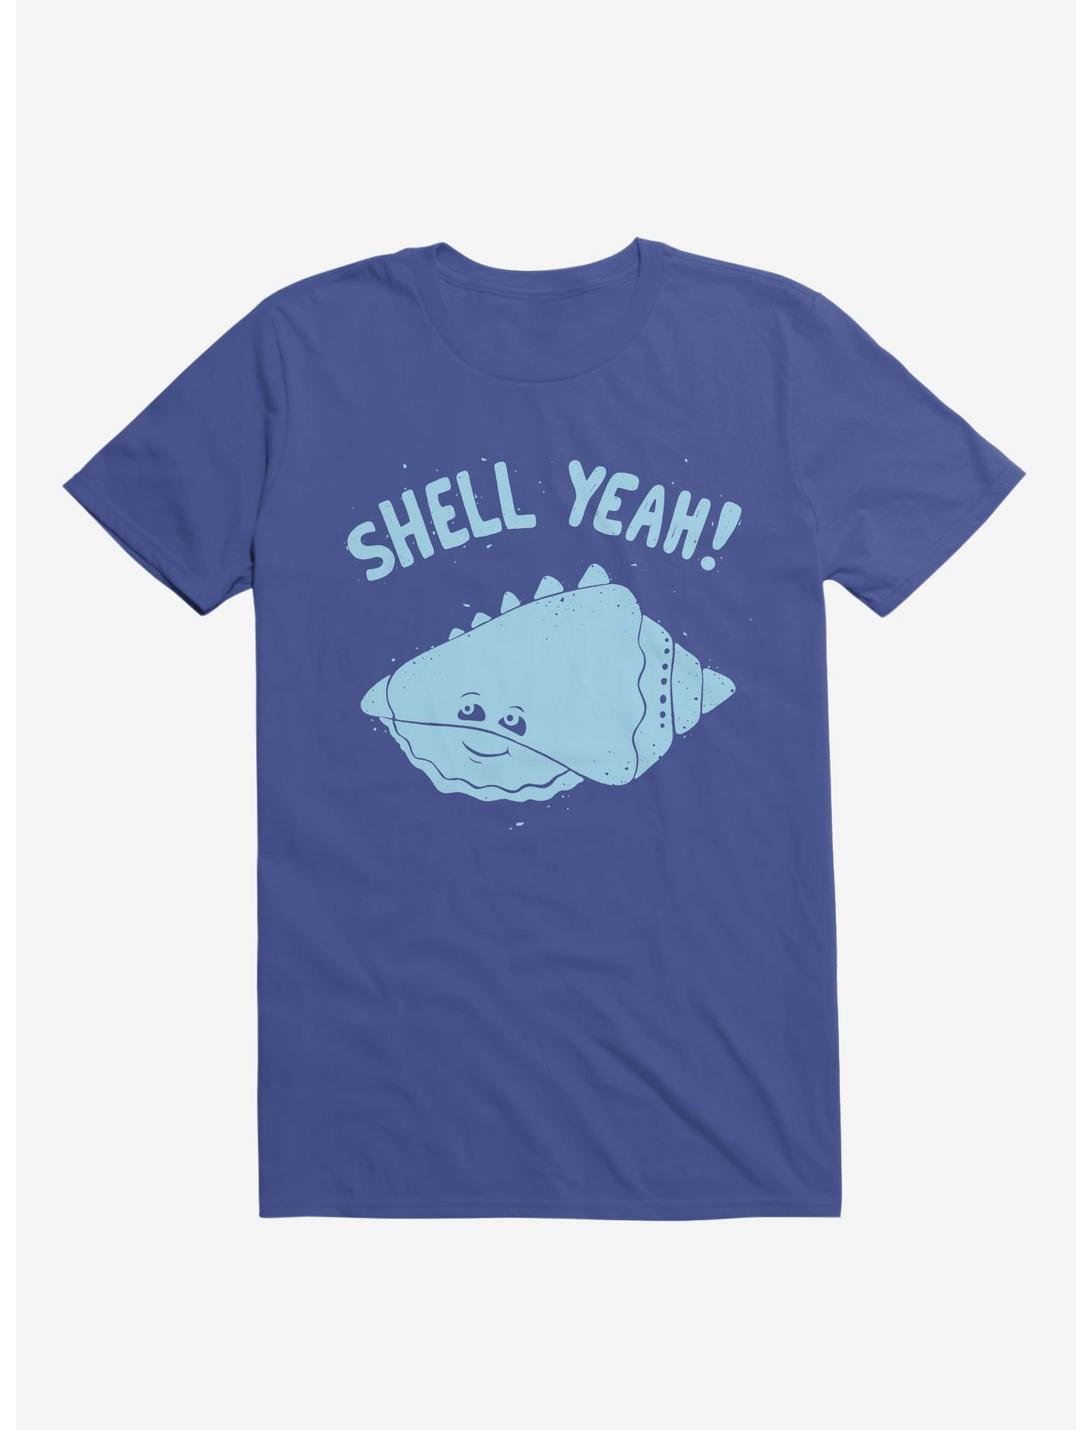 Shell Yeah! T-Shirt, ROYAL, hi-res